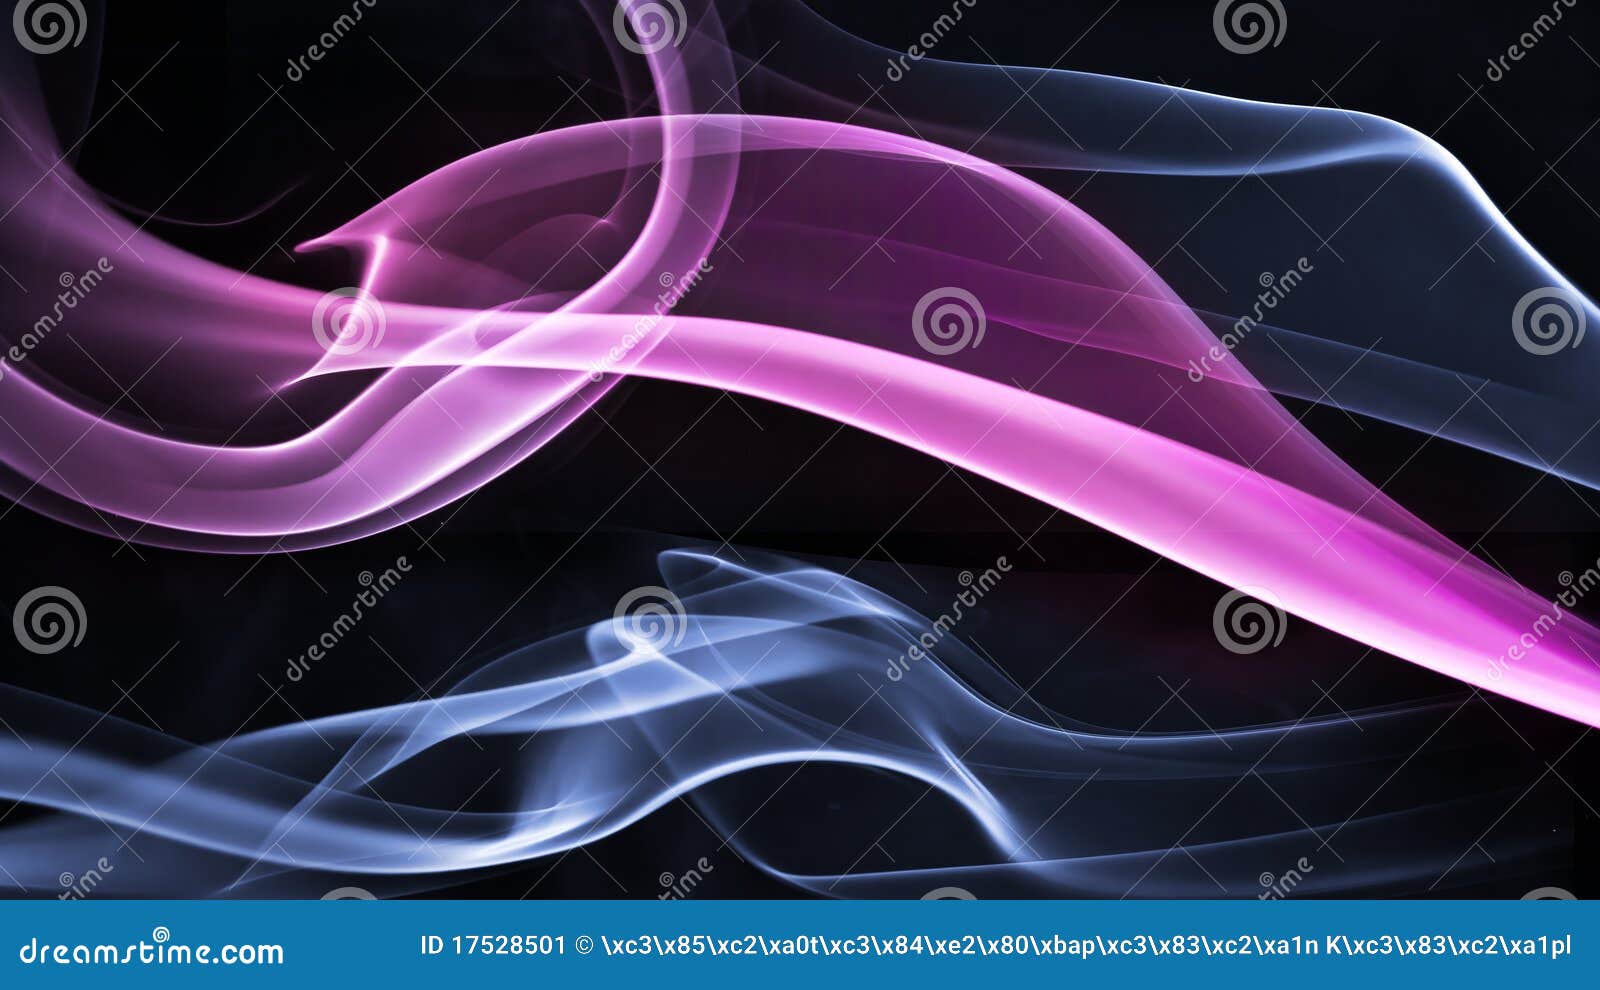 Colorful Smoke Stock Image - Image: 17528501